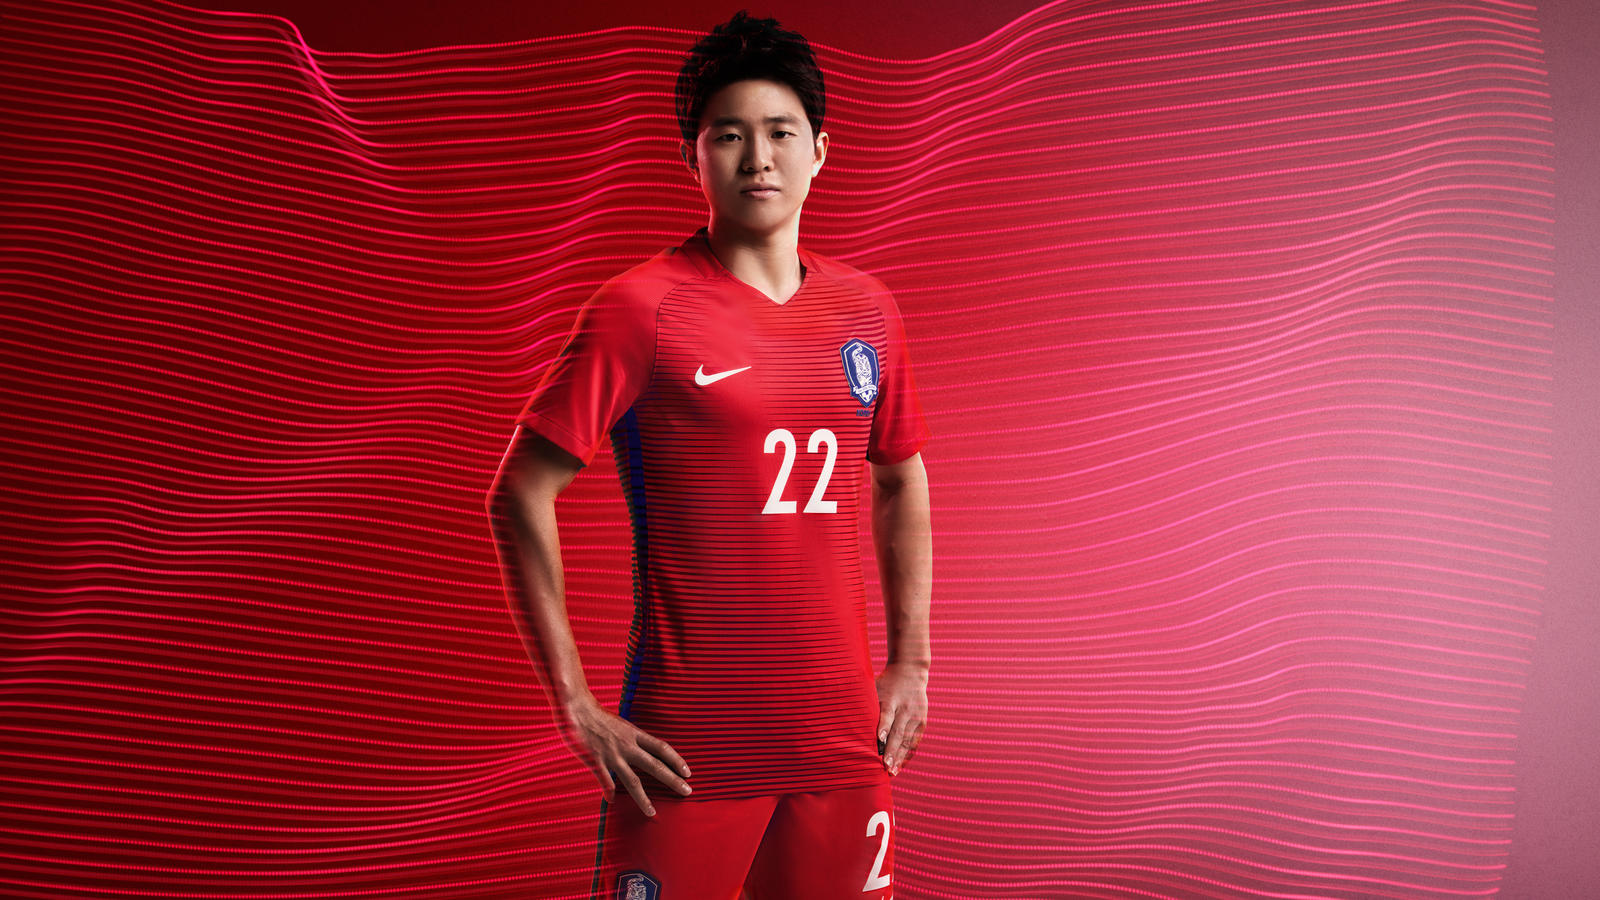 South Korea 2016 National Football Kits   Nike News